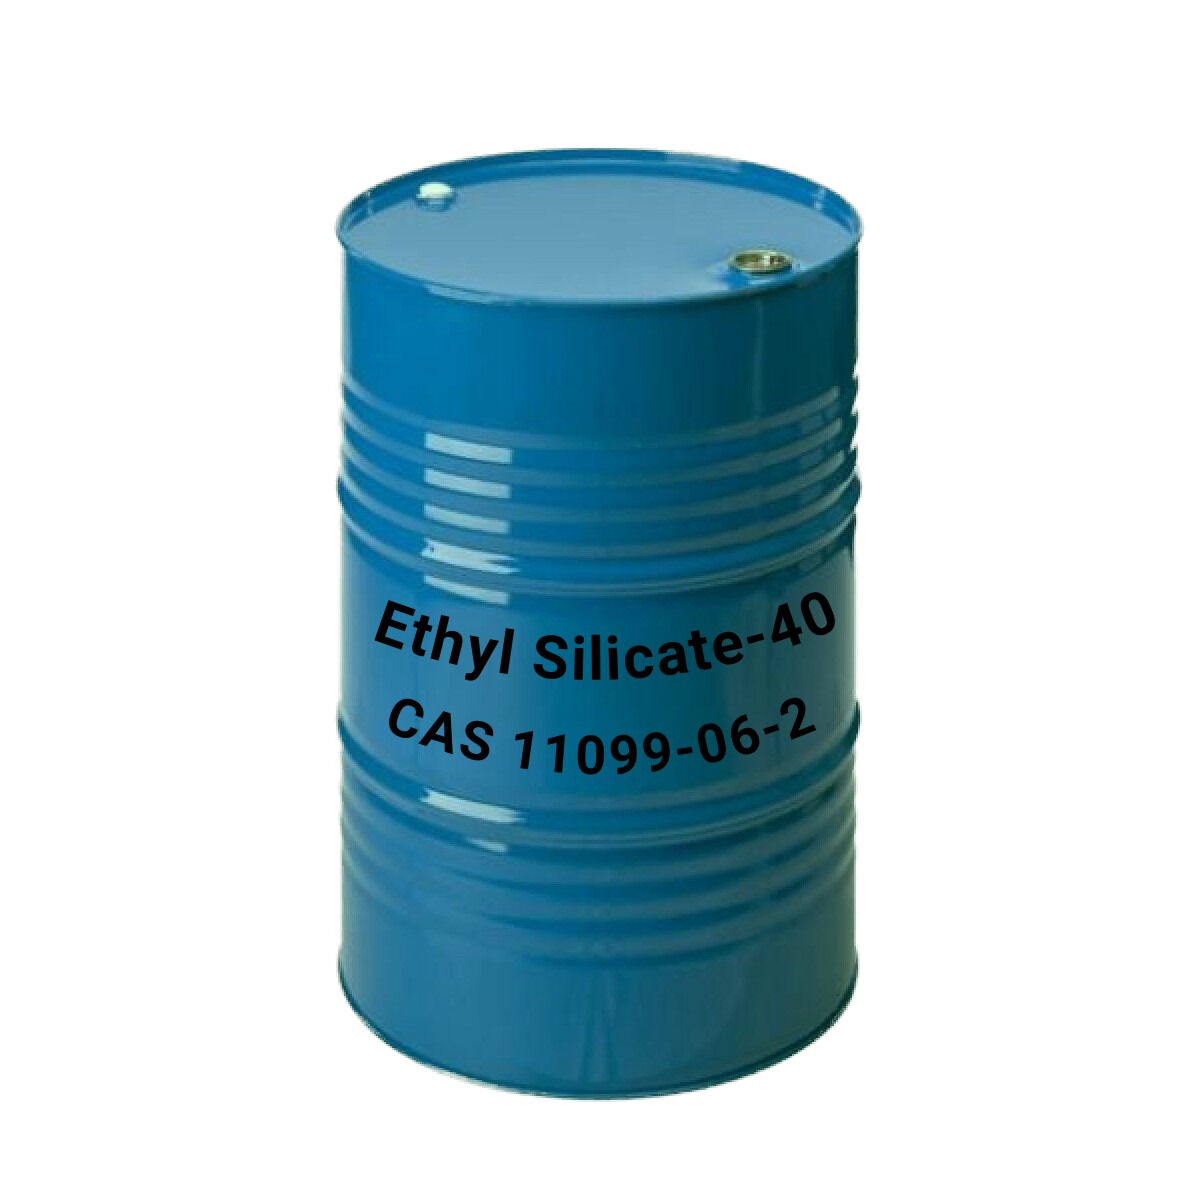 Этилсиликат ТЭОС-40, Ethyl silicate-40, CAS 11099-06-2 Китай